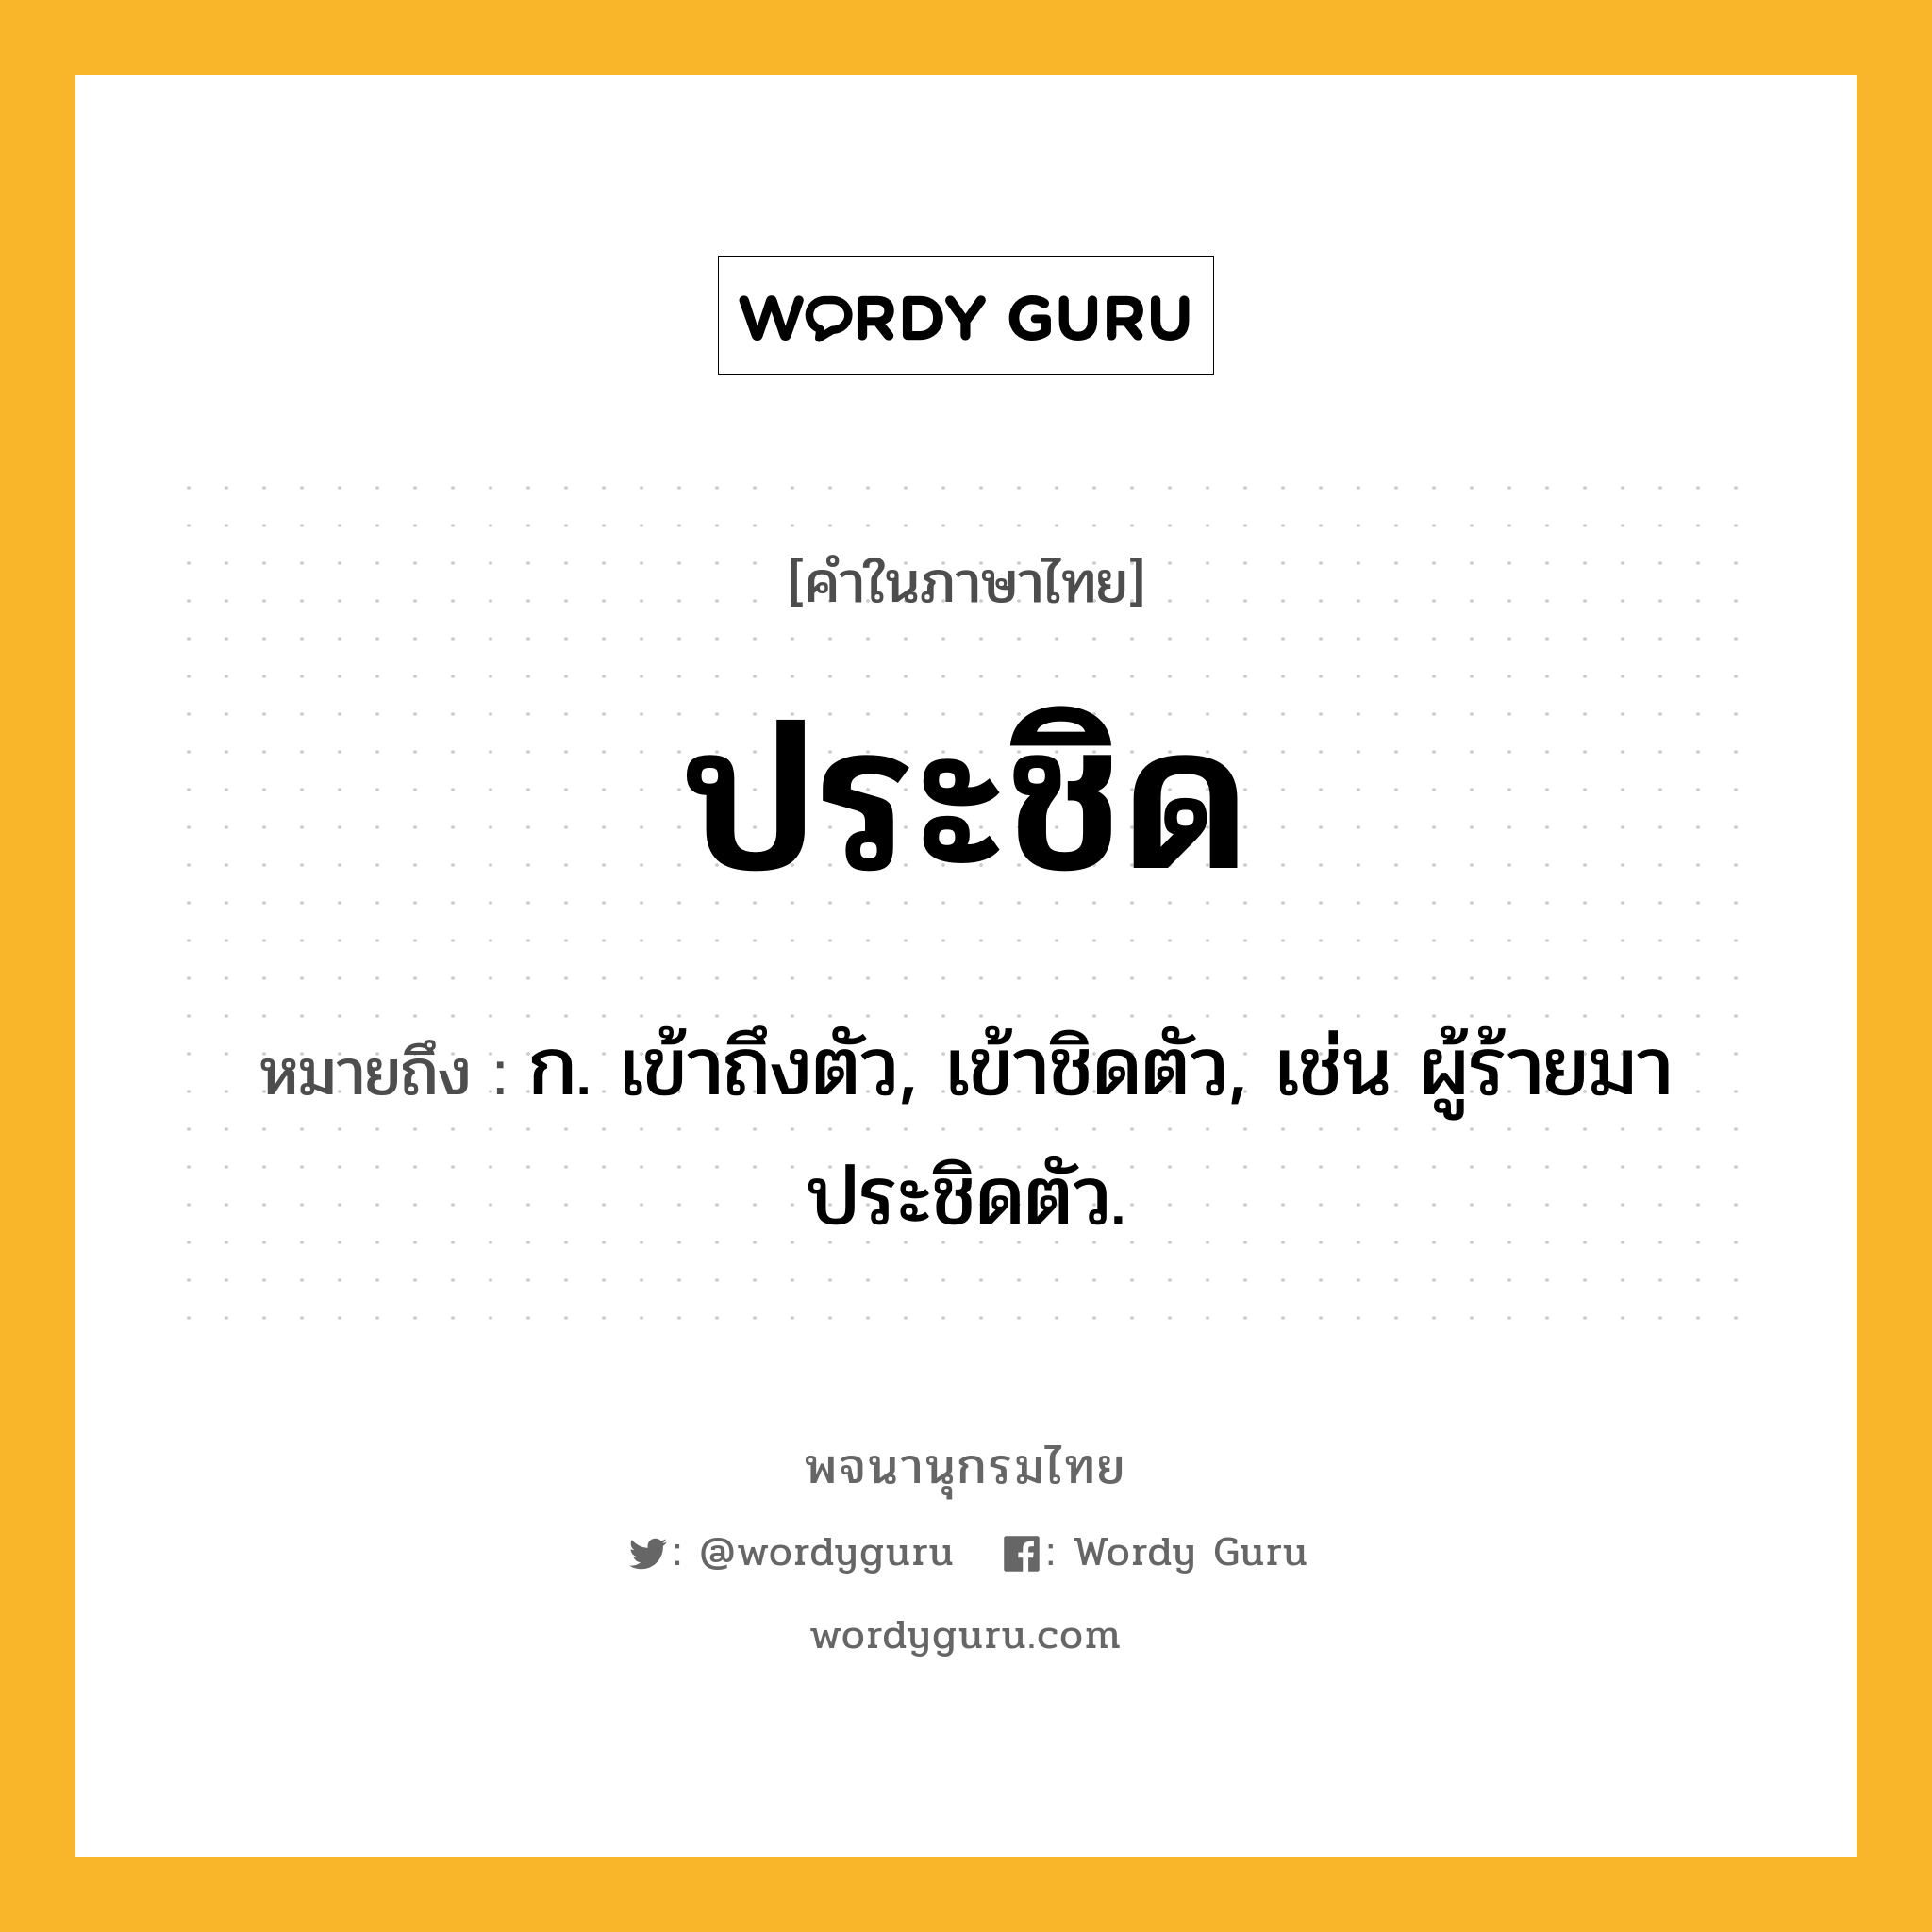 ประชิด ความหมาย หมายถึงอะไร?, คำในภาษาไทย ประชิด หมายถึง ก. เข้าถึงตัว, เข้าชิดตัว, เช่น ผู้ร้ายมาประชิดตัว.